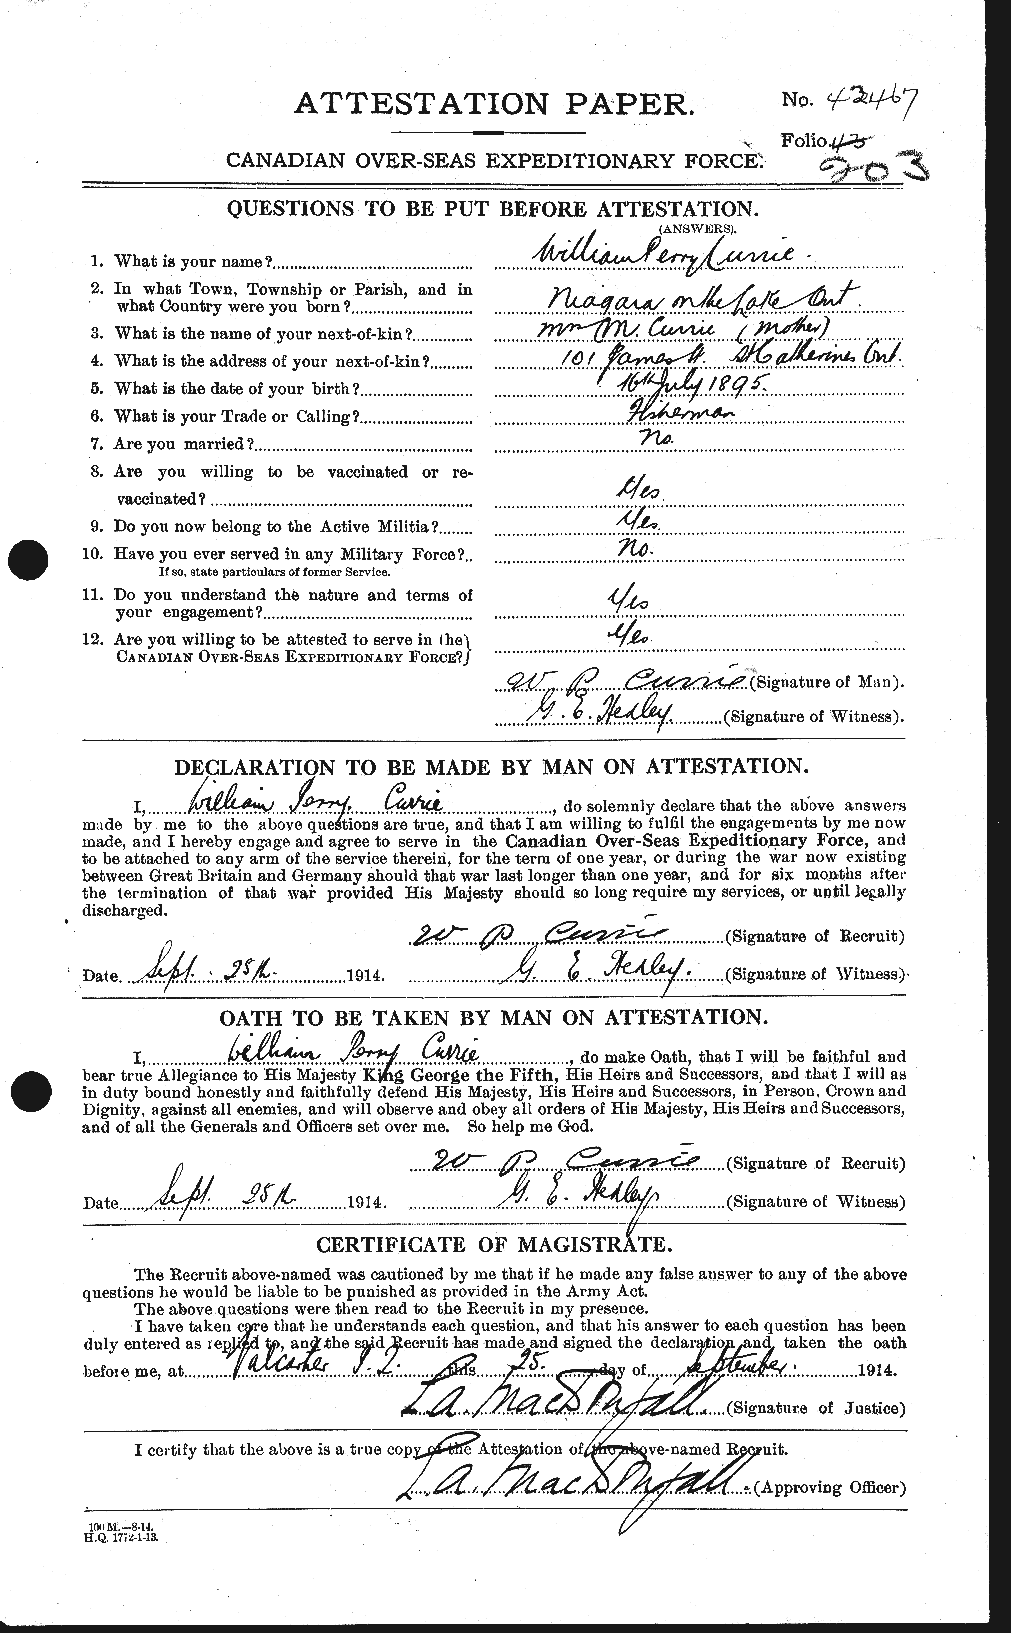 Dossiers du Personnel de la Première Guerre mondiale - CEC 071439a